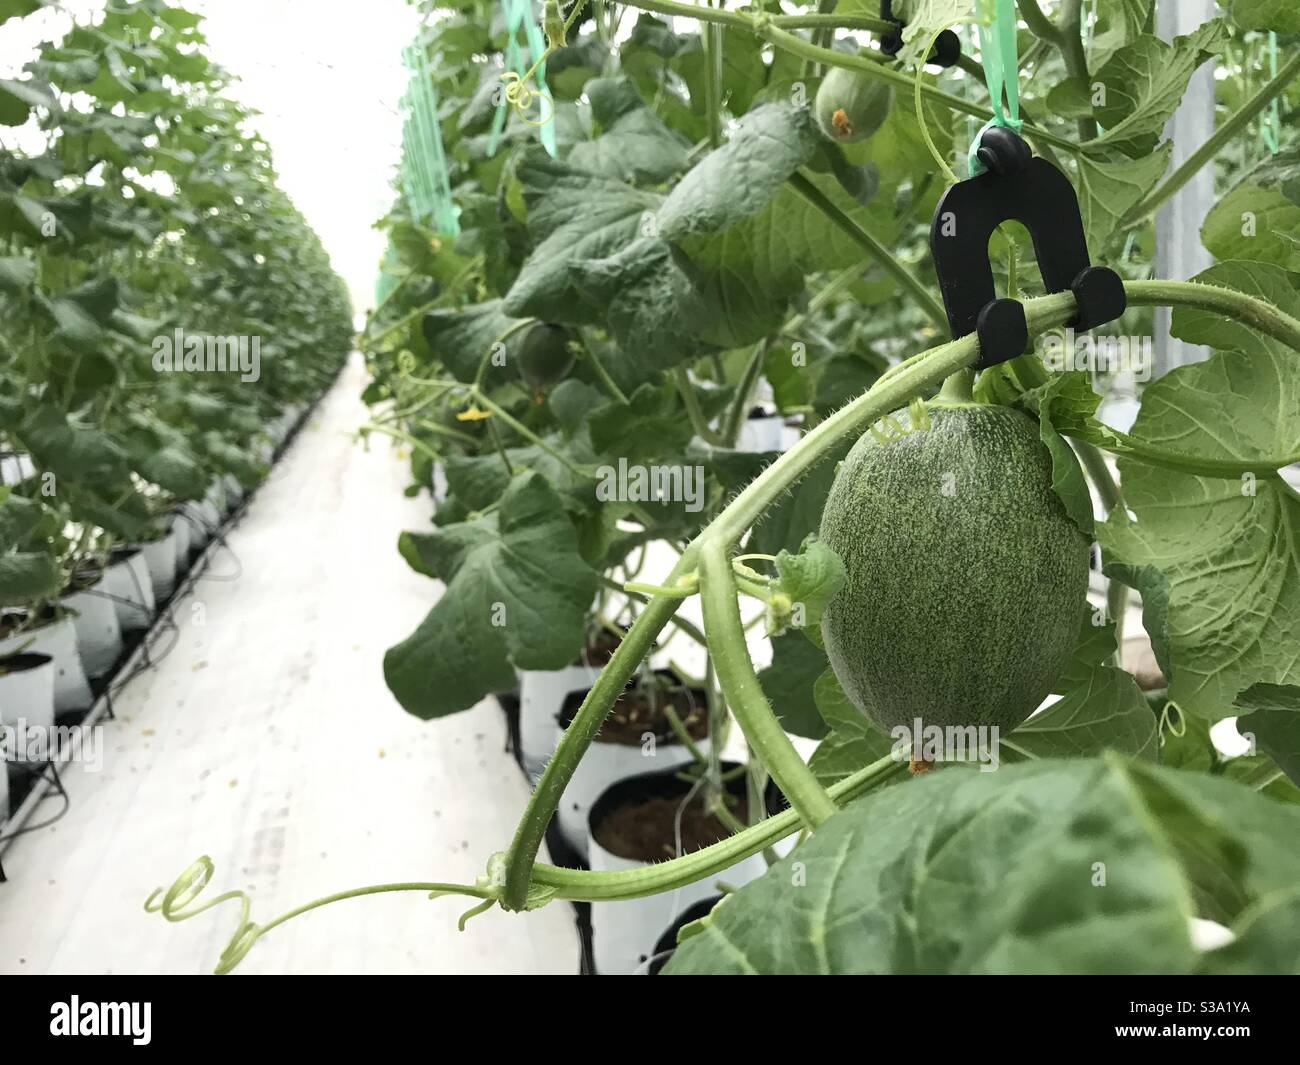 Melon garden Stock Photo